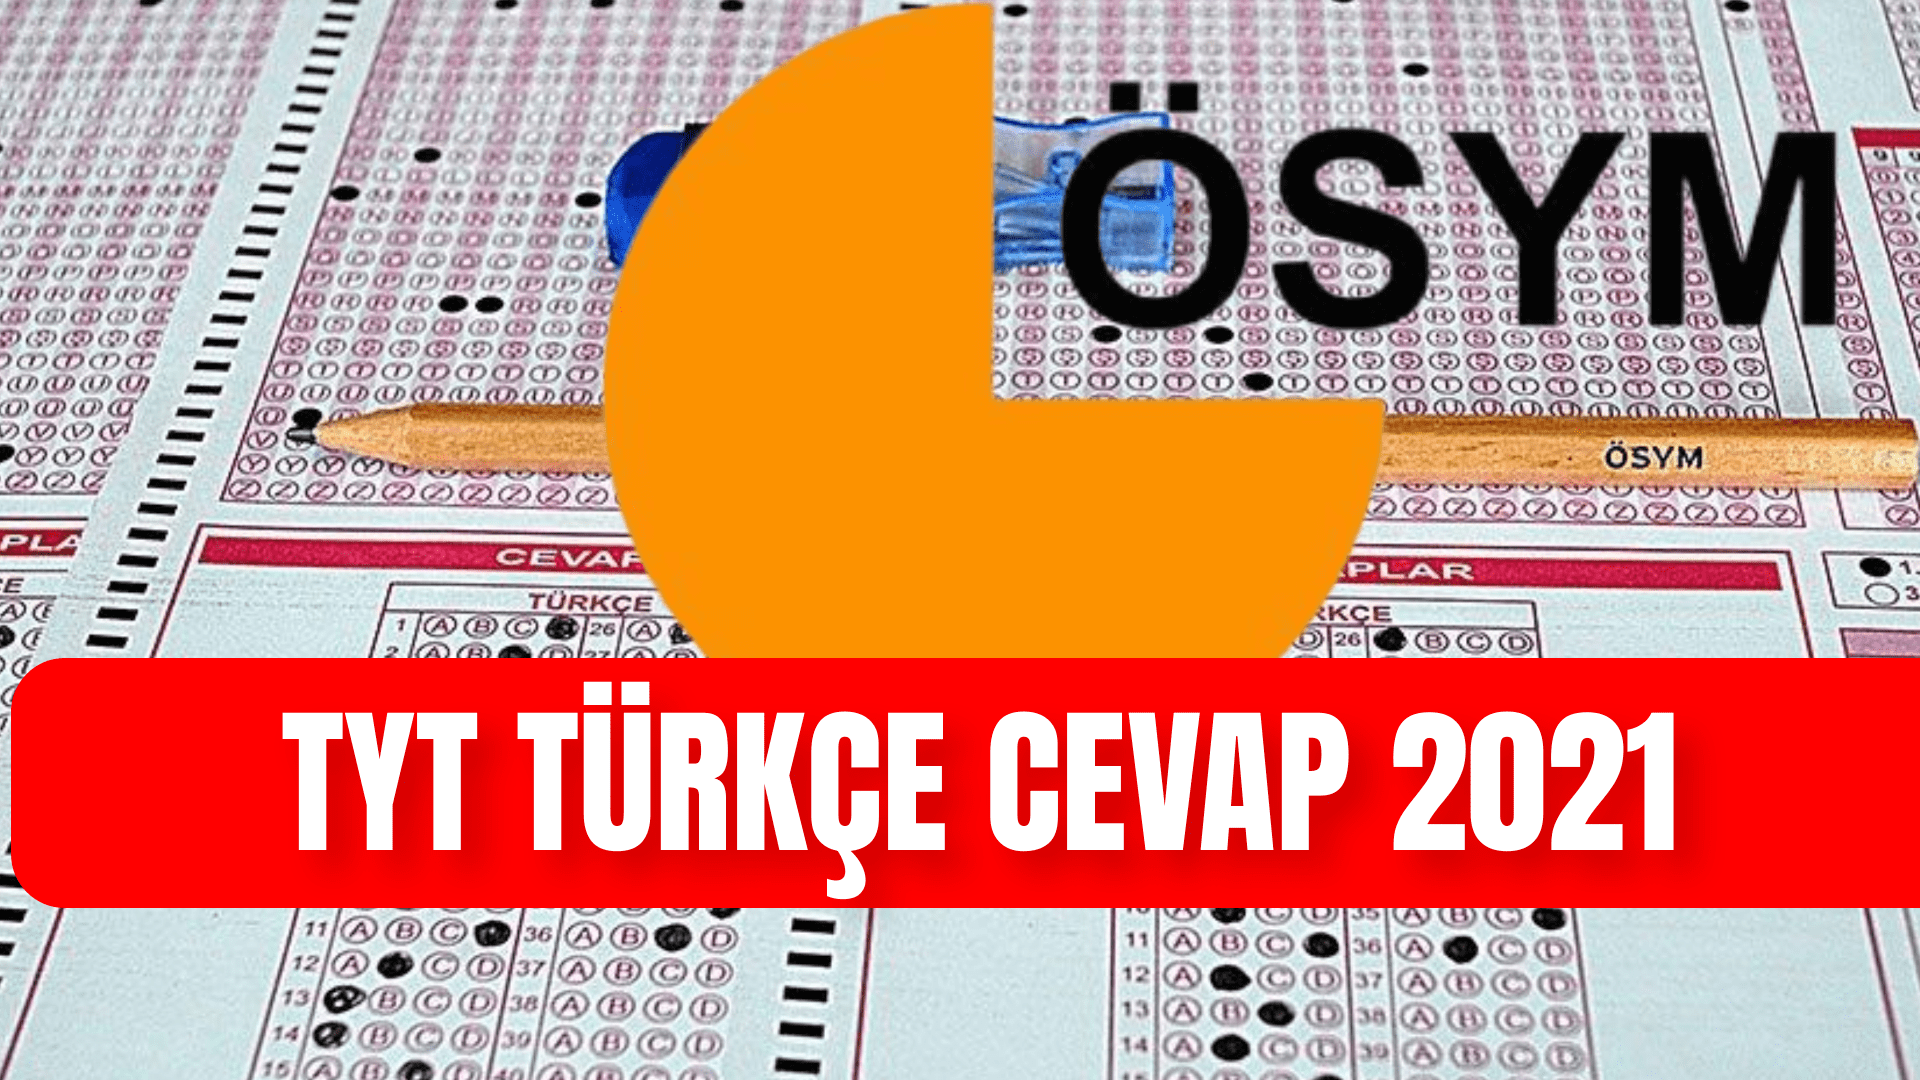 TYT TURKCE CEVAP 2021